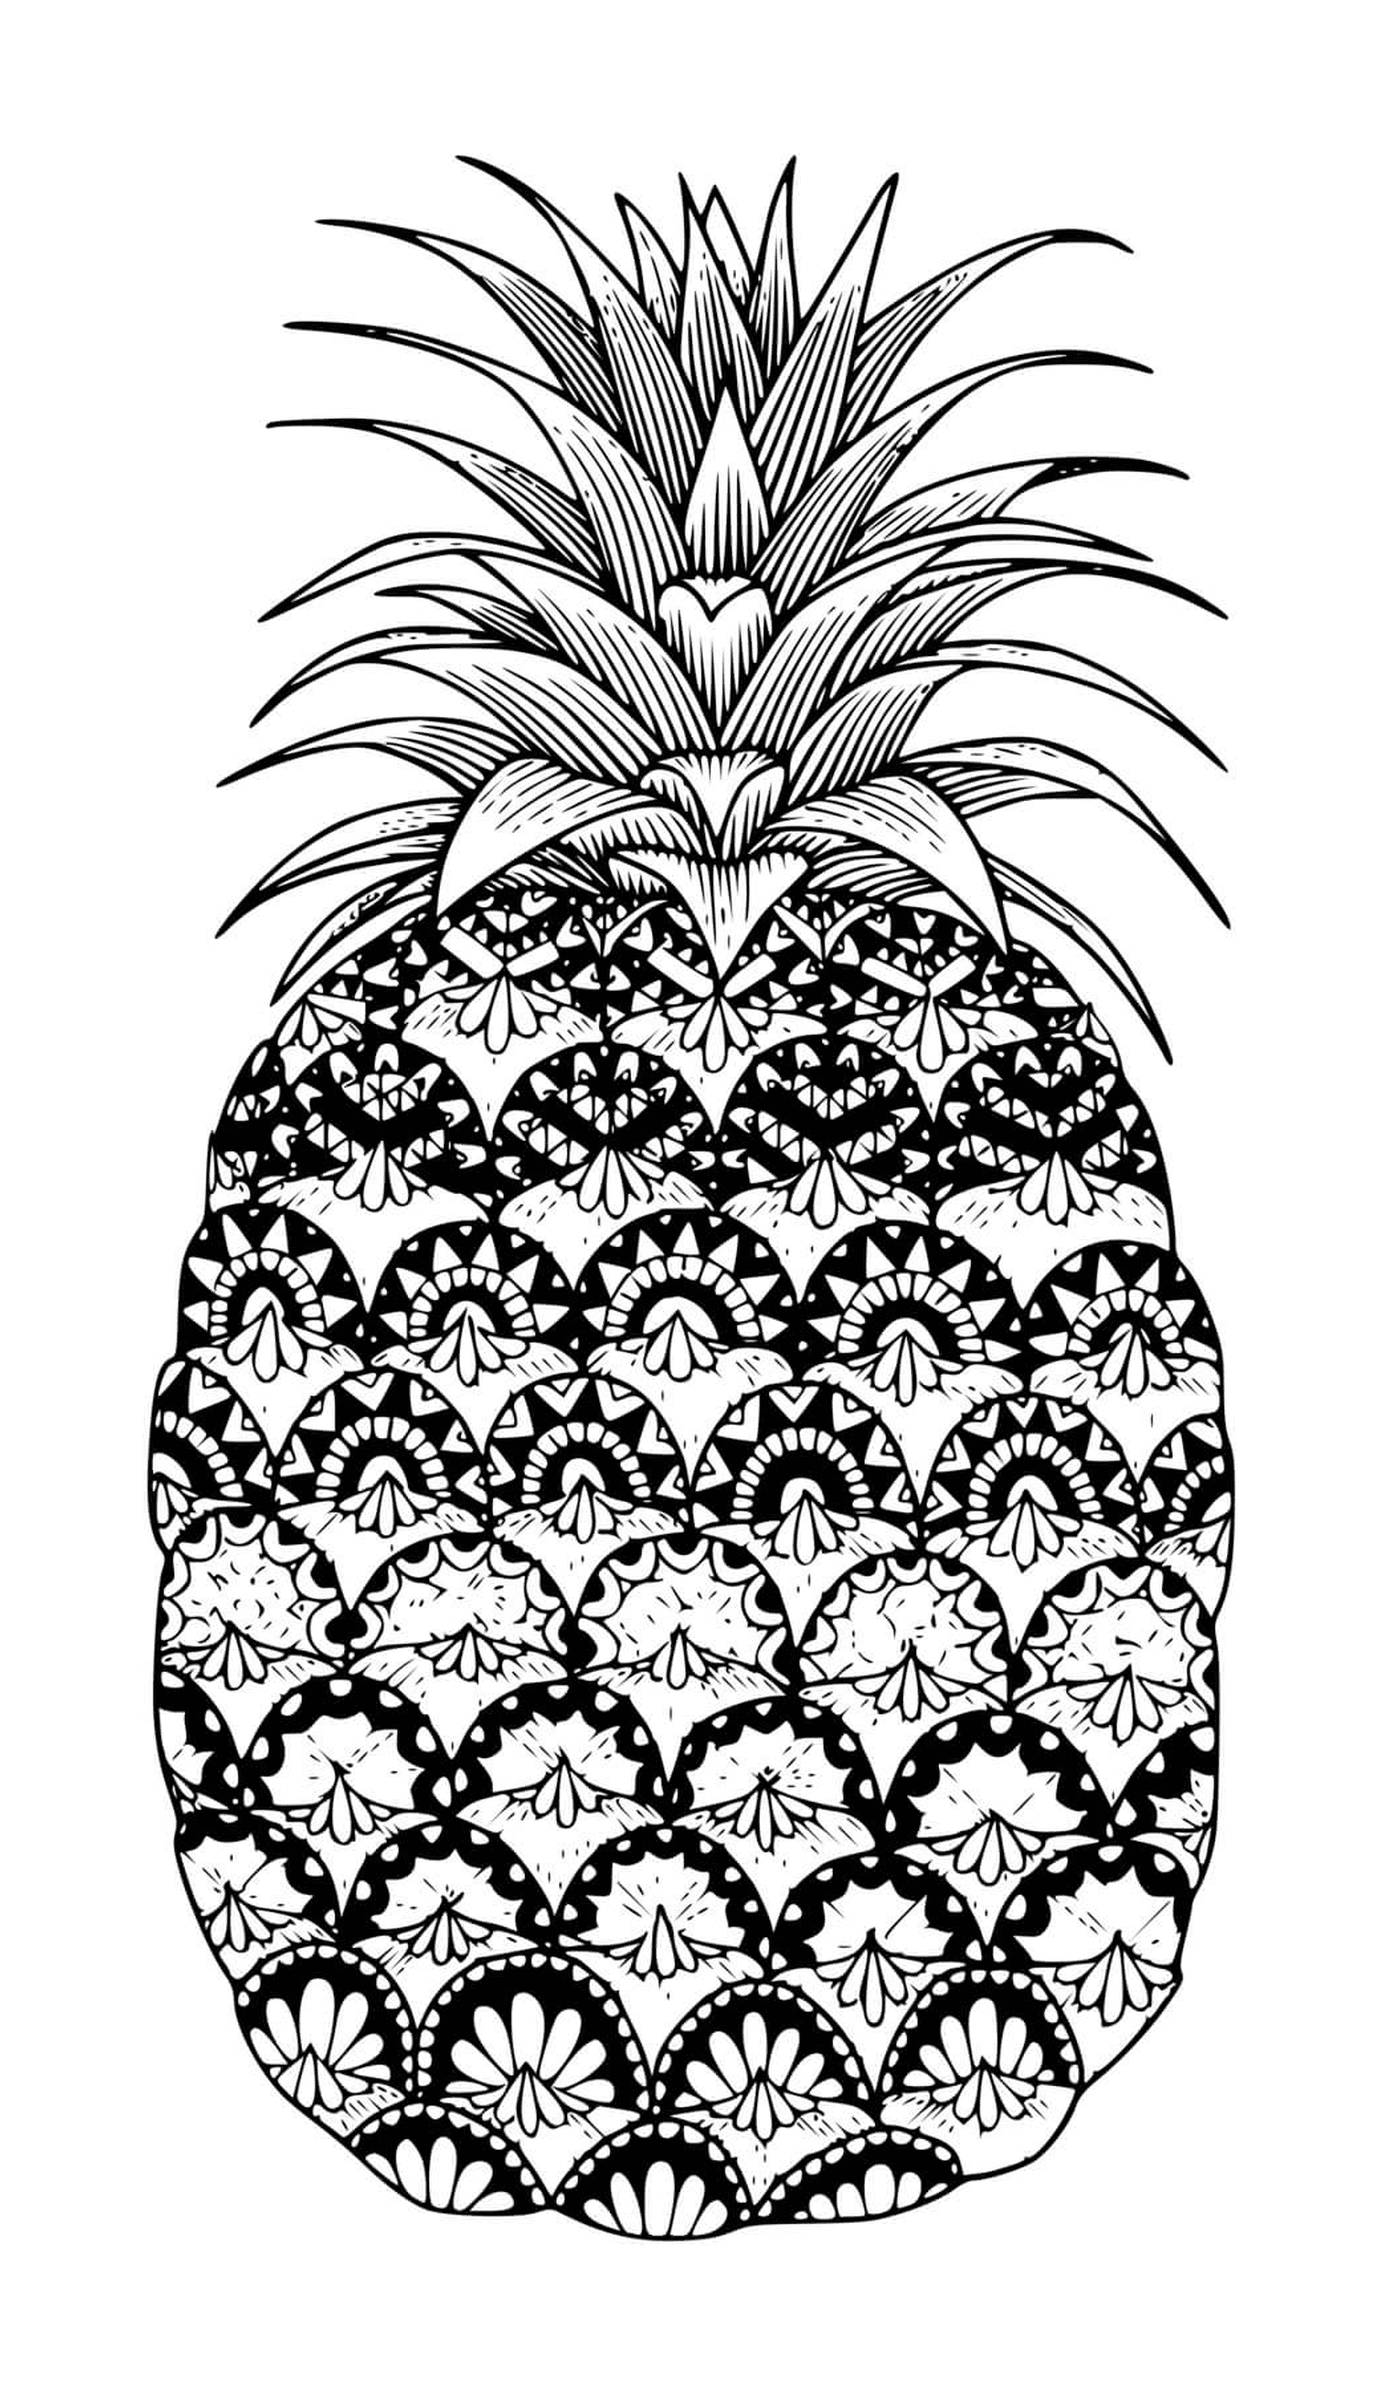  水果菠萝的 zentangle mandala 